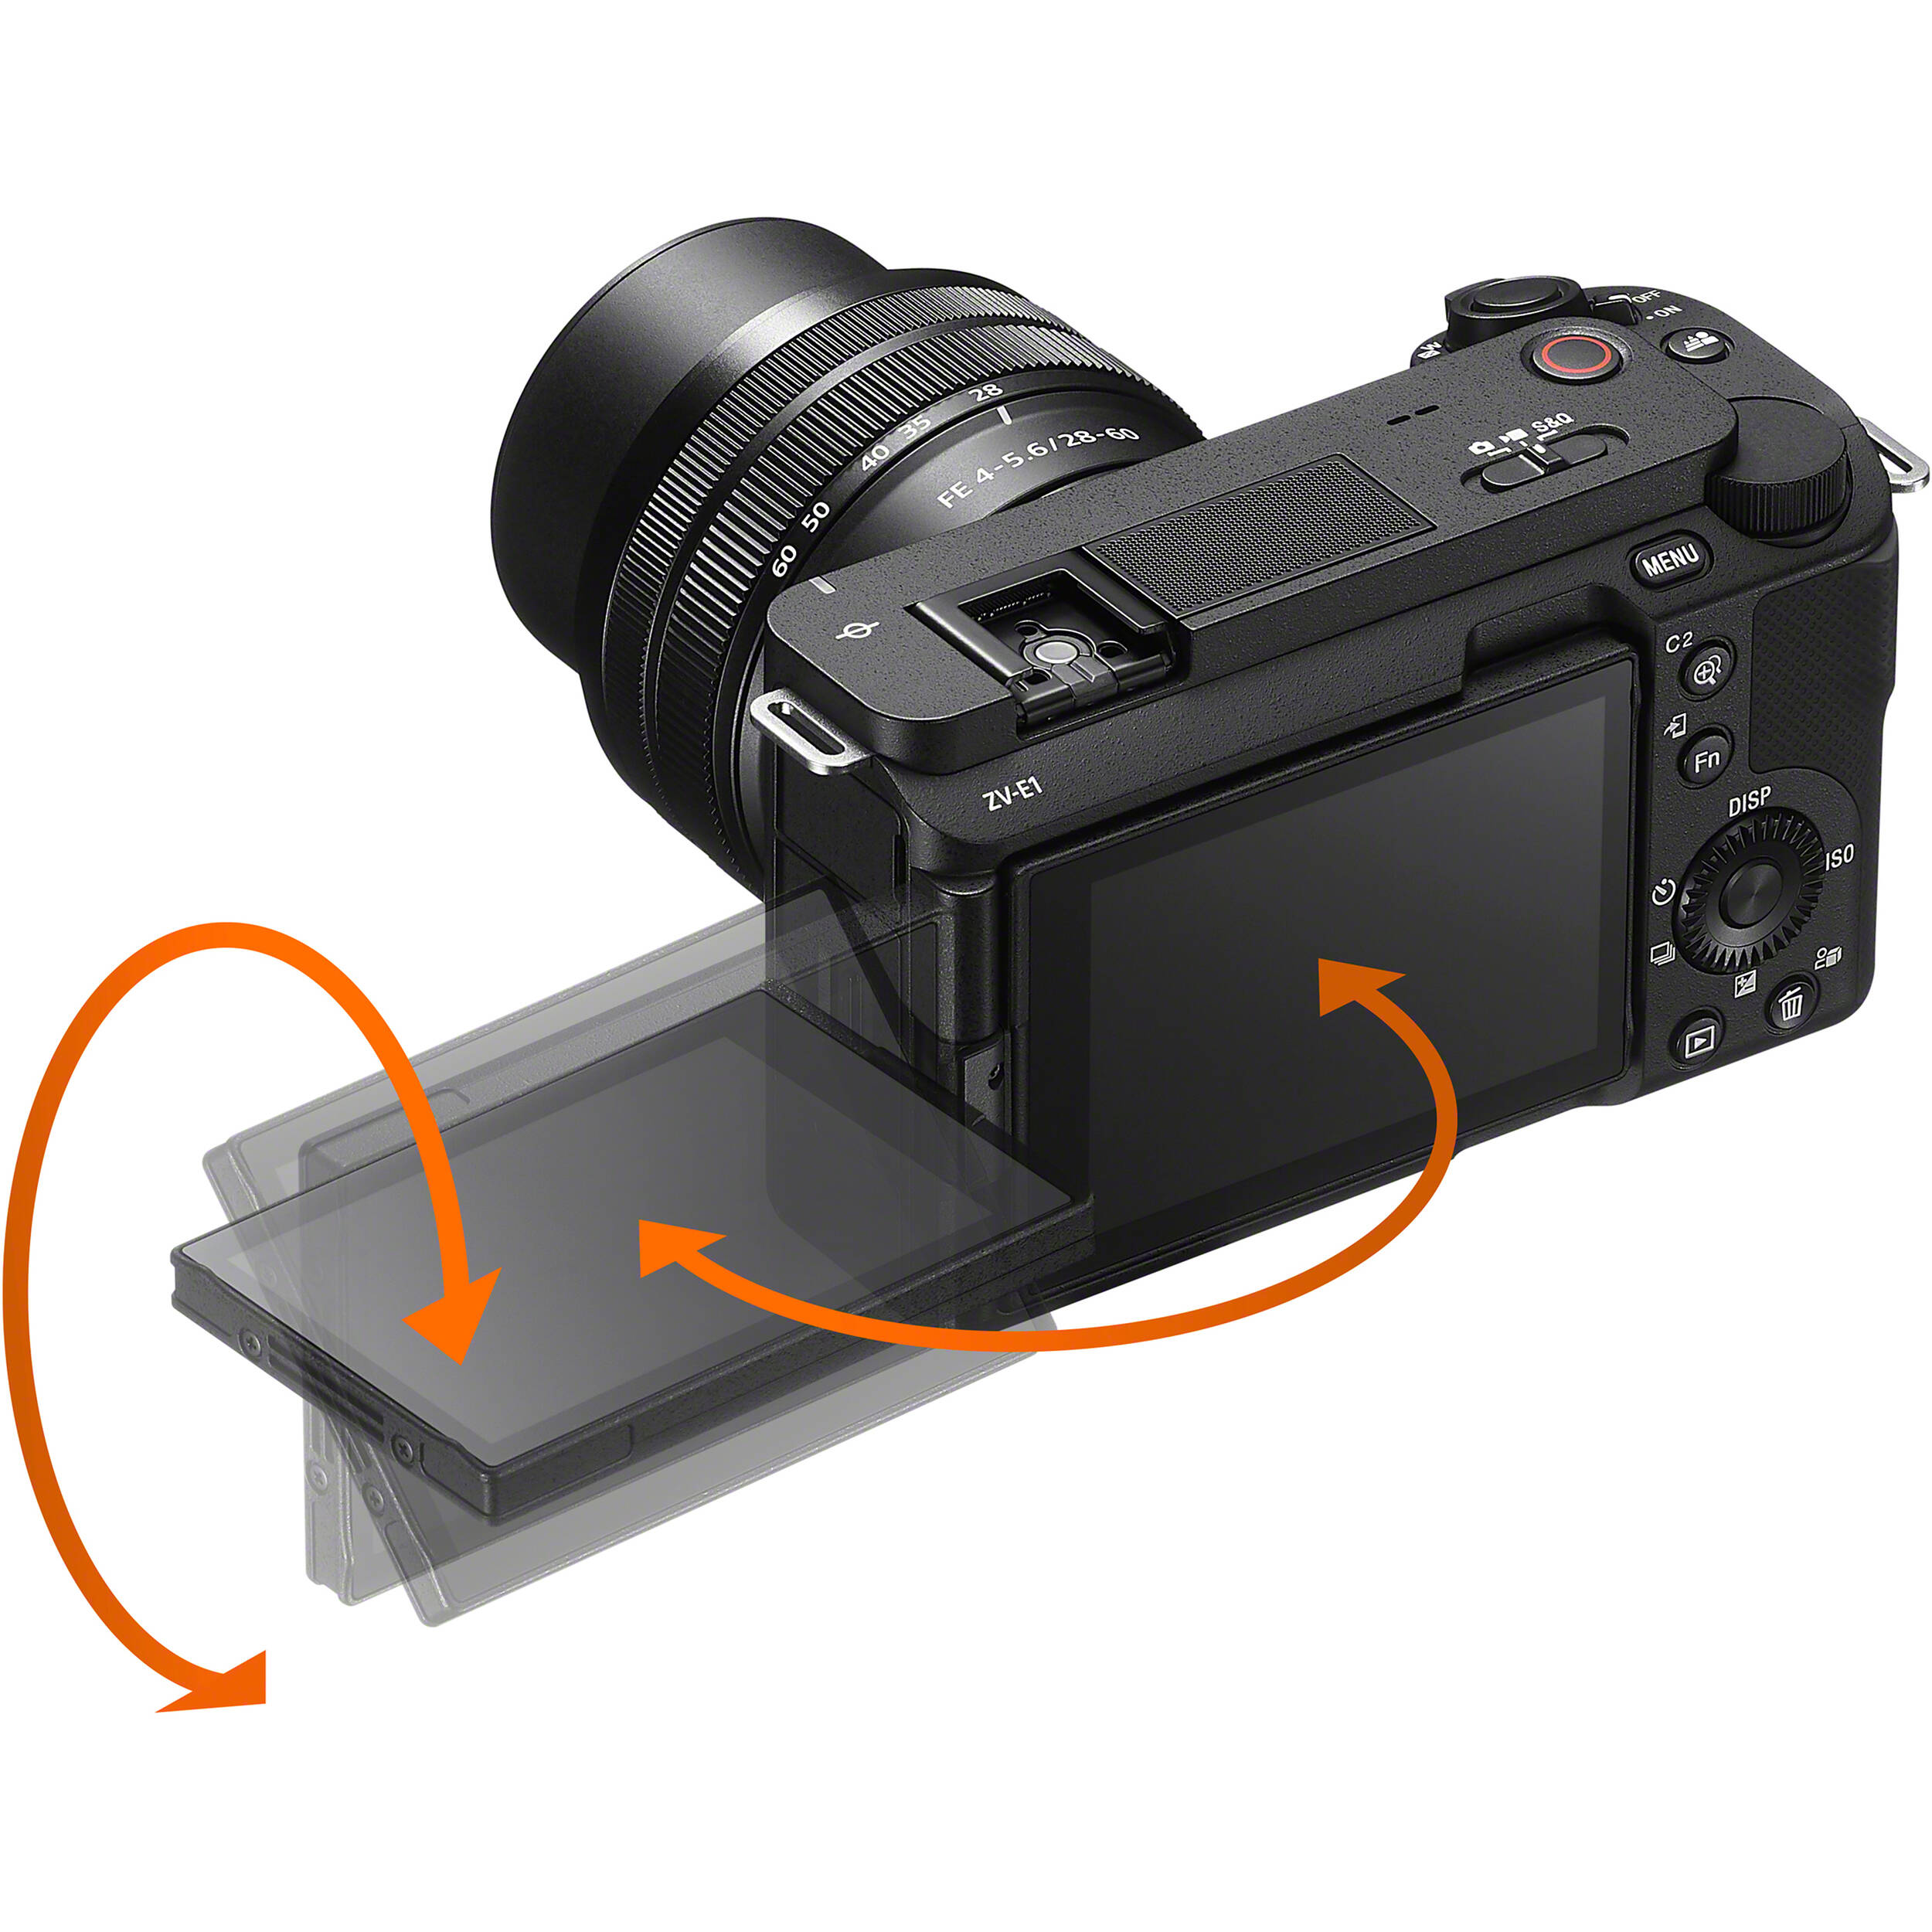 Sony Alpha ZV-E1 Mirrorless Camera Body - Black